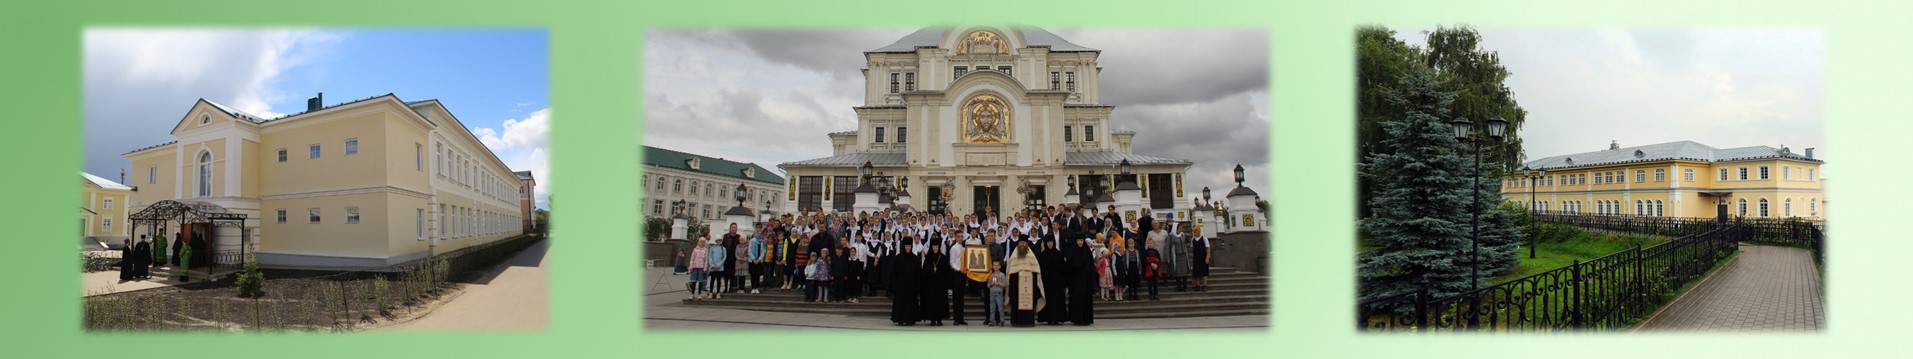 Частное общеобразовательное учреждение "Александринская монастырская православная школа"